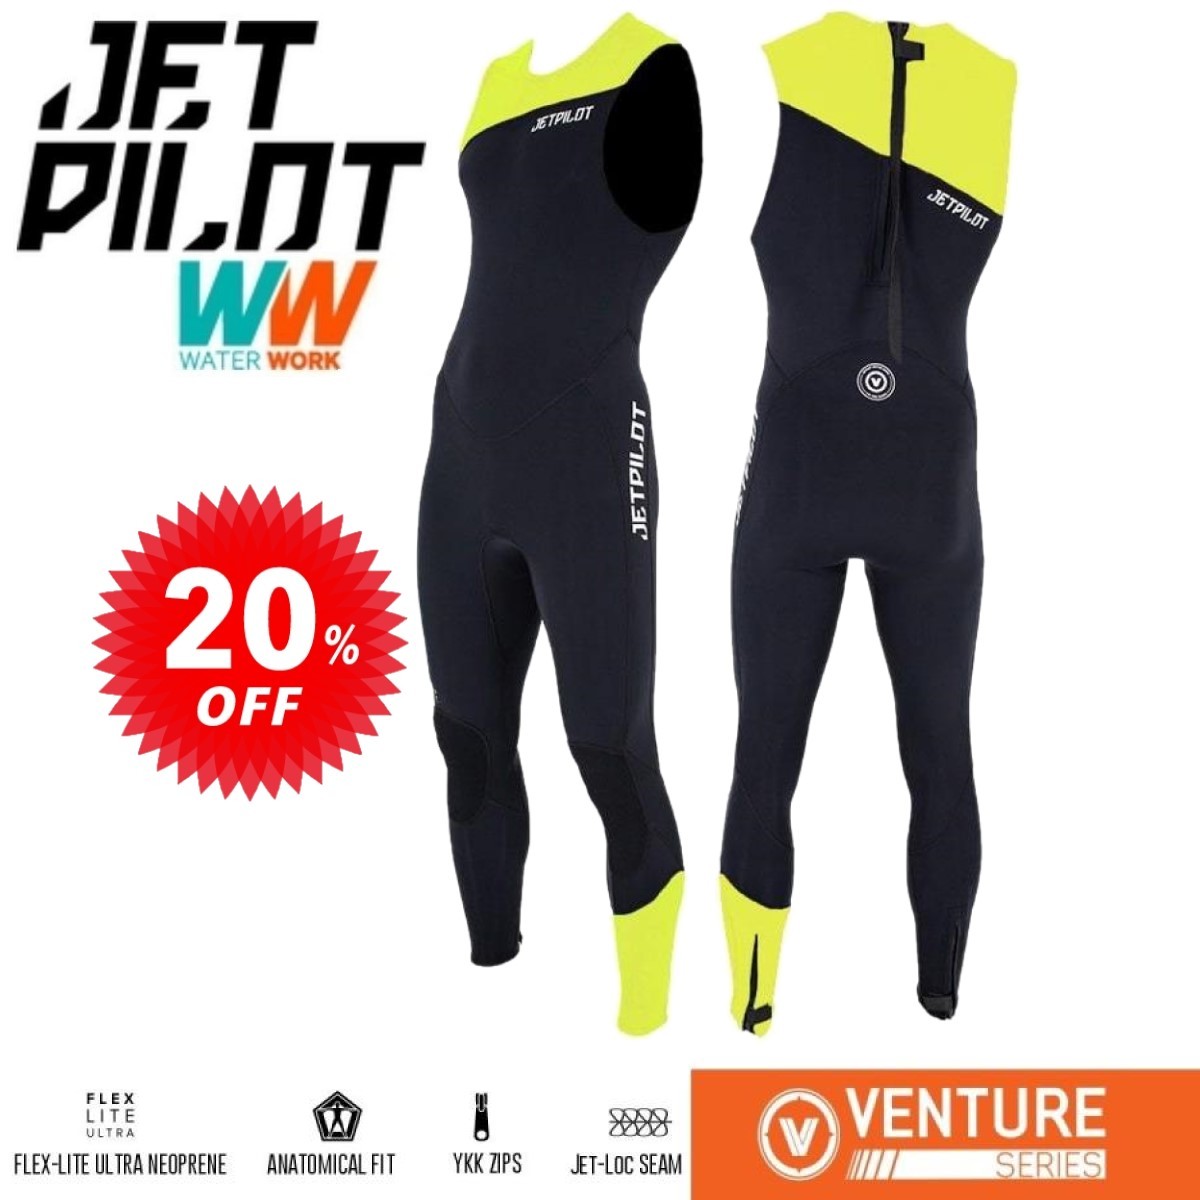 ジェットパイロット JETPILOT セール 20%オフ 送料無料 ウェットスーツ メンズ ベンチャー ジョン JA21154 ブラック/イエロー L